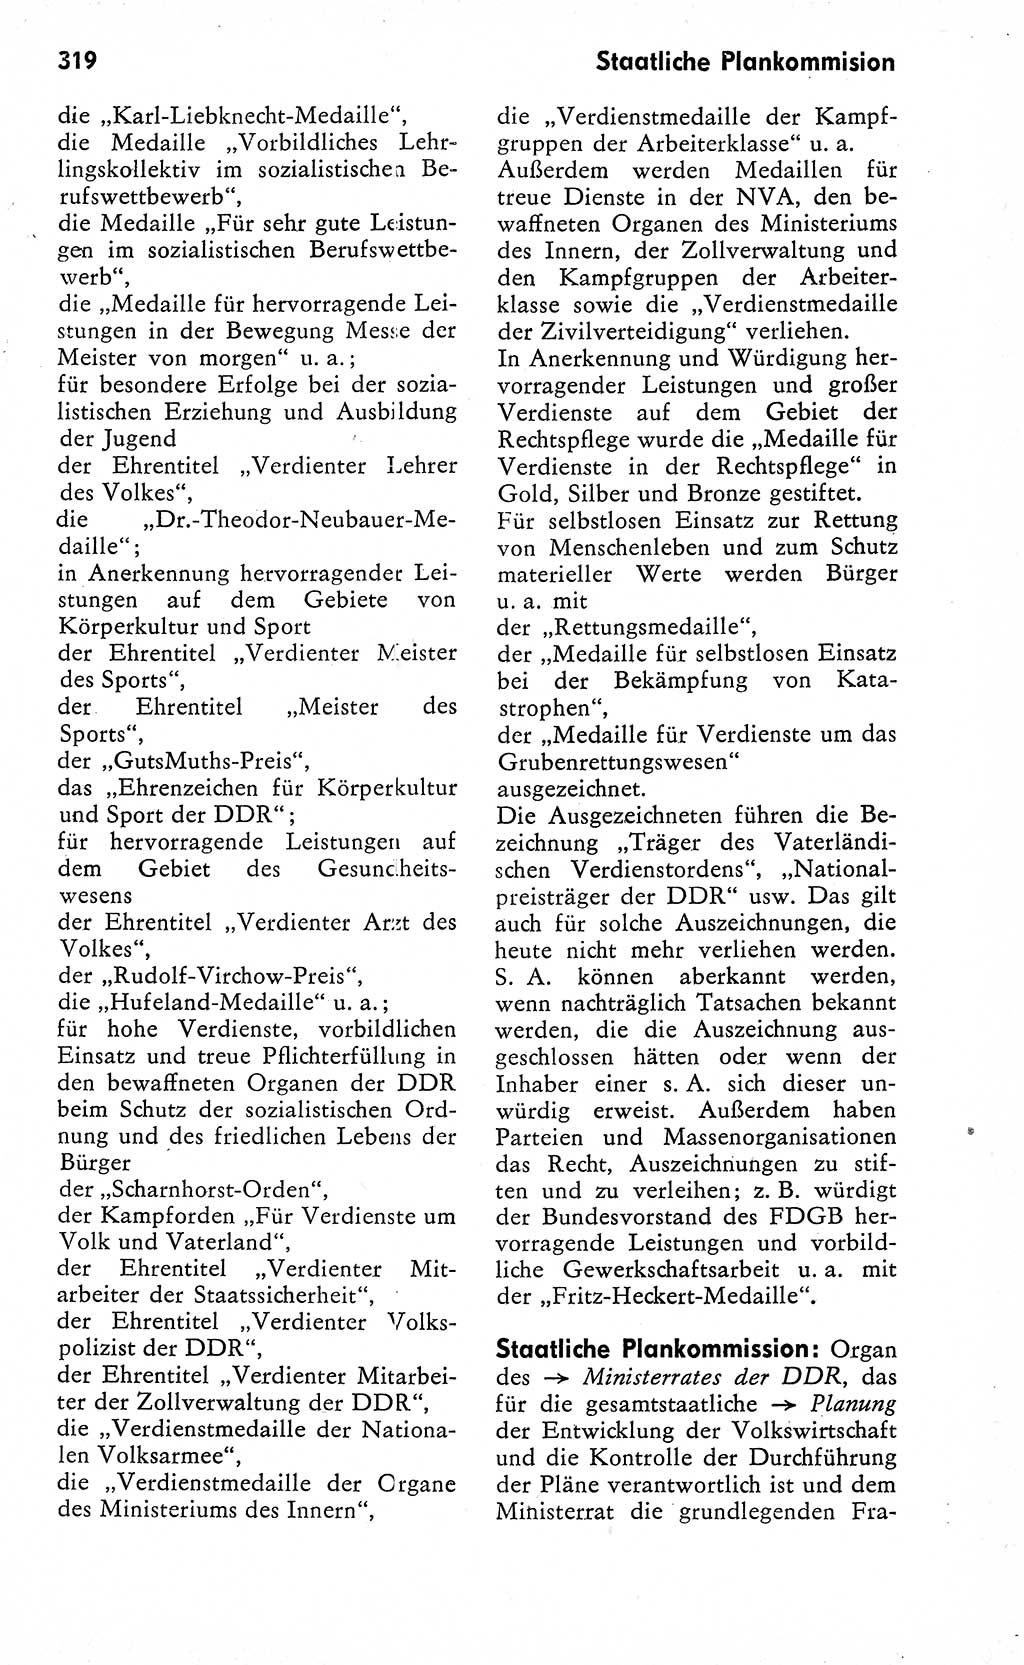 Wörterbuch zum sozialistischen Staat [Deutsche Demokratische Republik (DDR)] 1974, Seite 319 (Wb. soz. St. DDR 1974, S. 319)